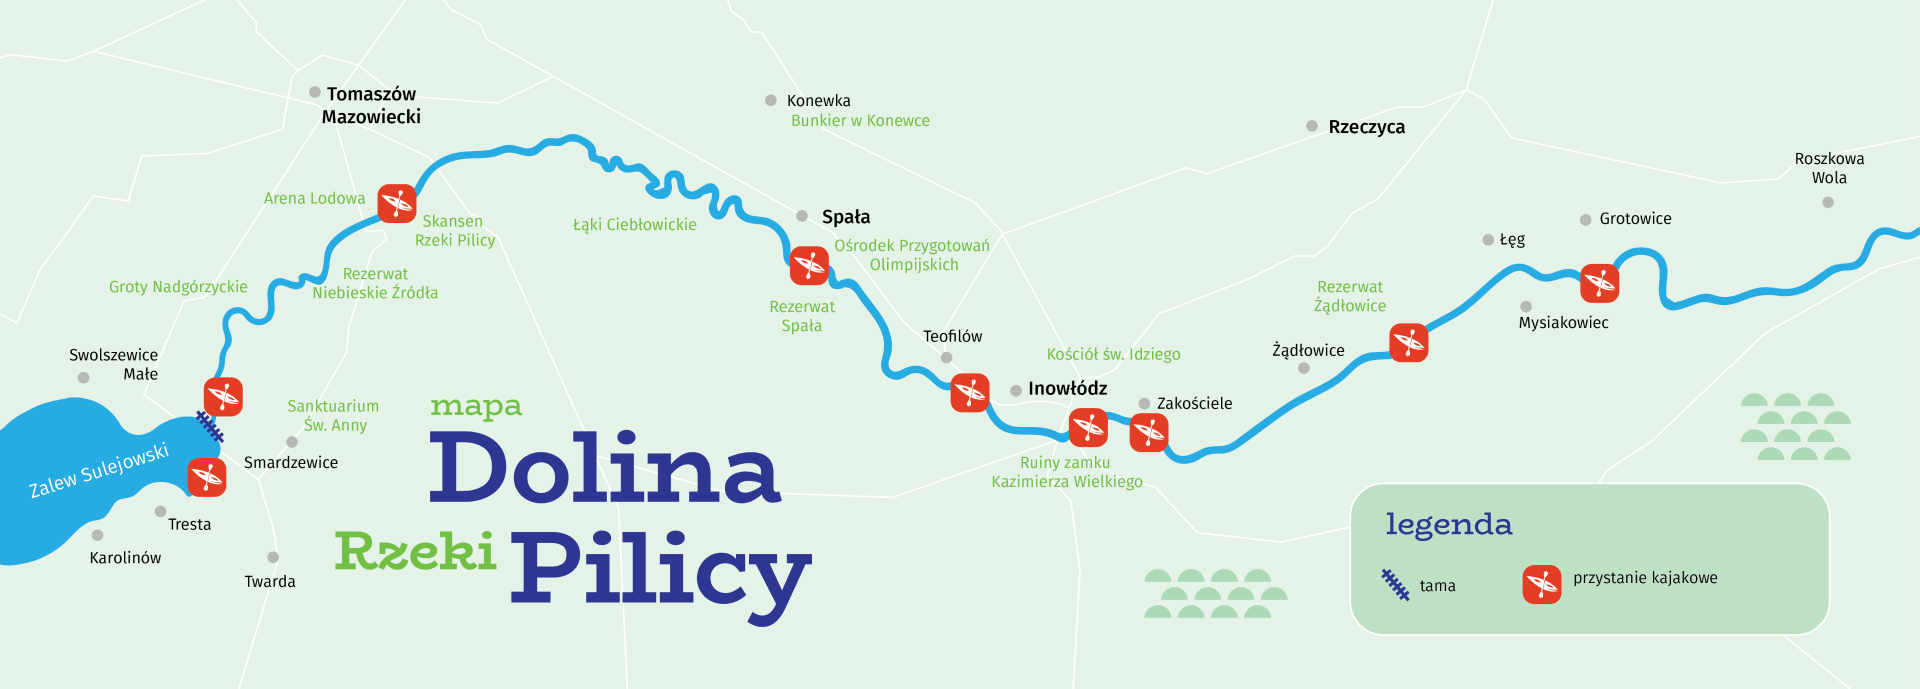 Mapa szlaku doliny rzeki Pilicy